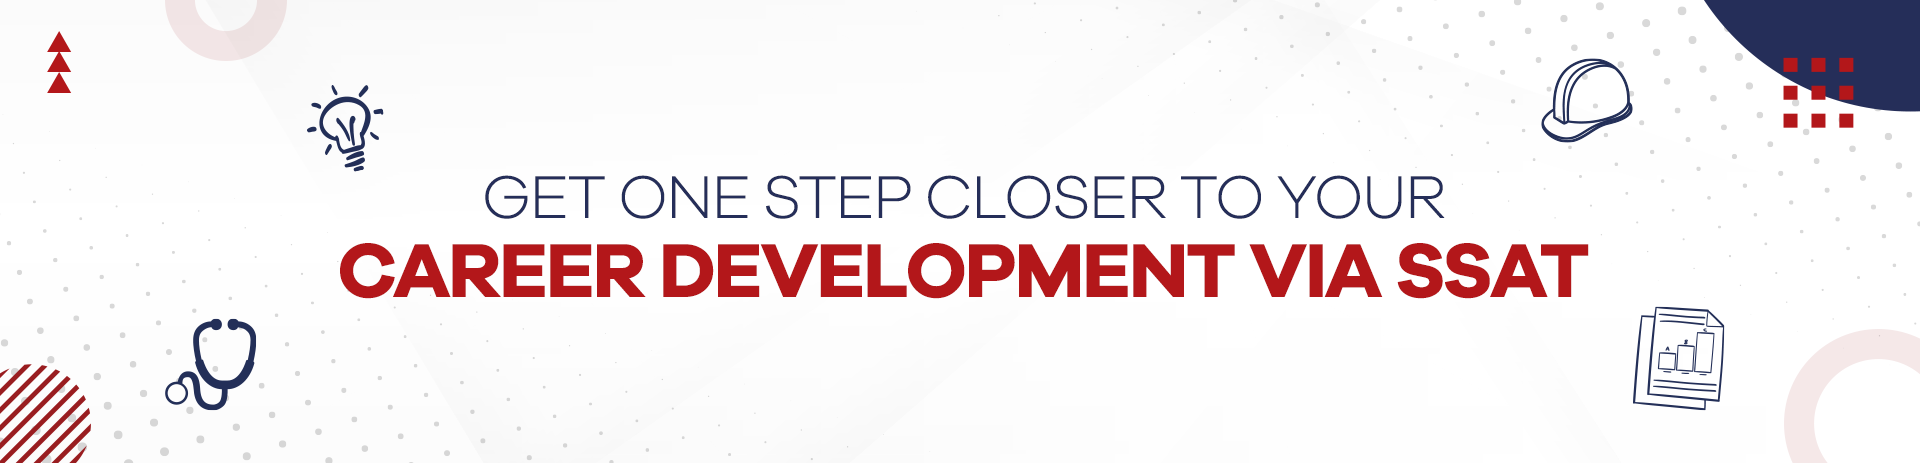 Get One Step Closer to Your Career Development via SSAT